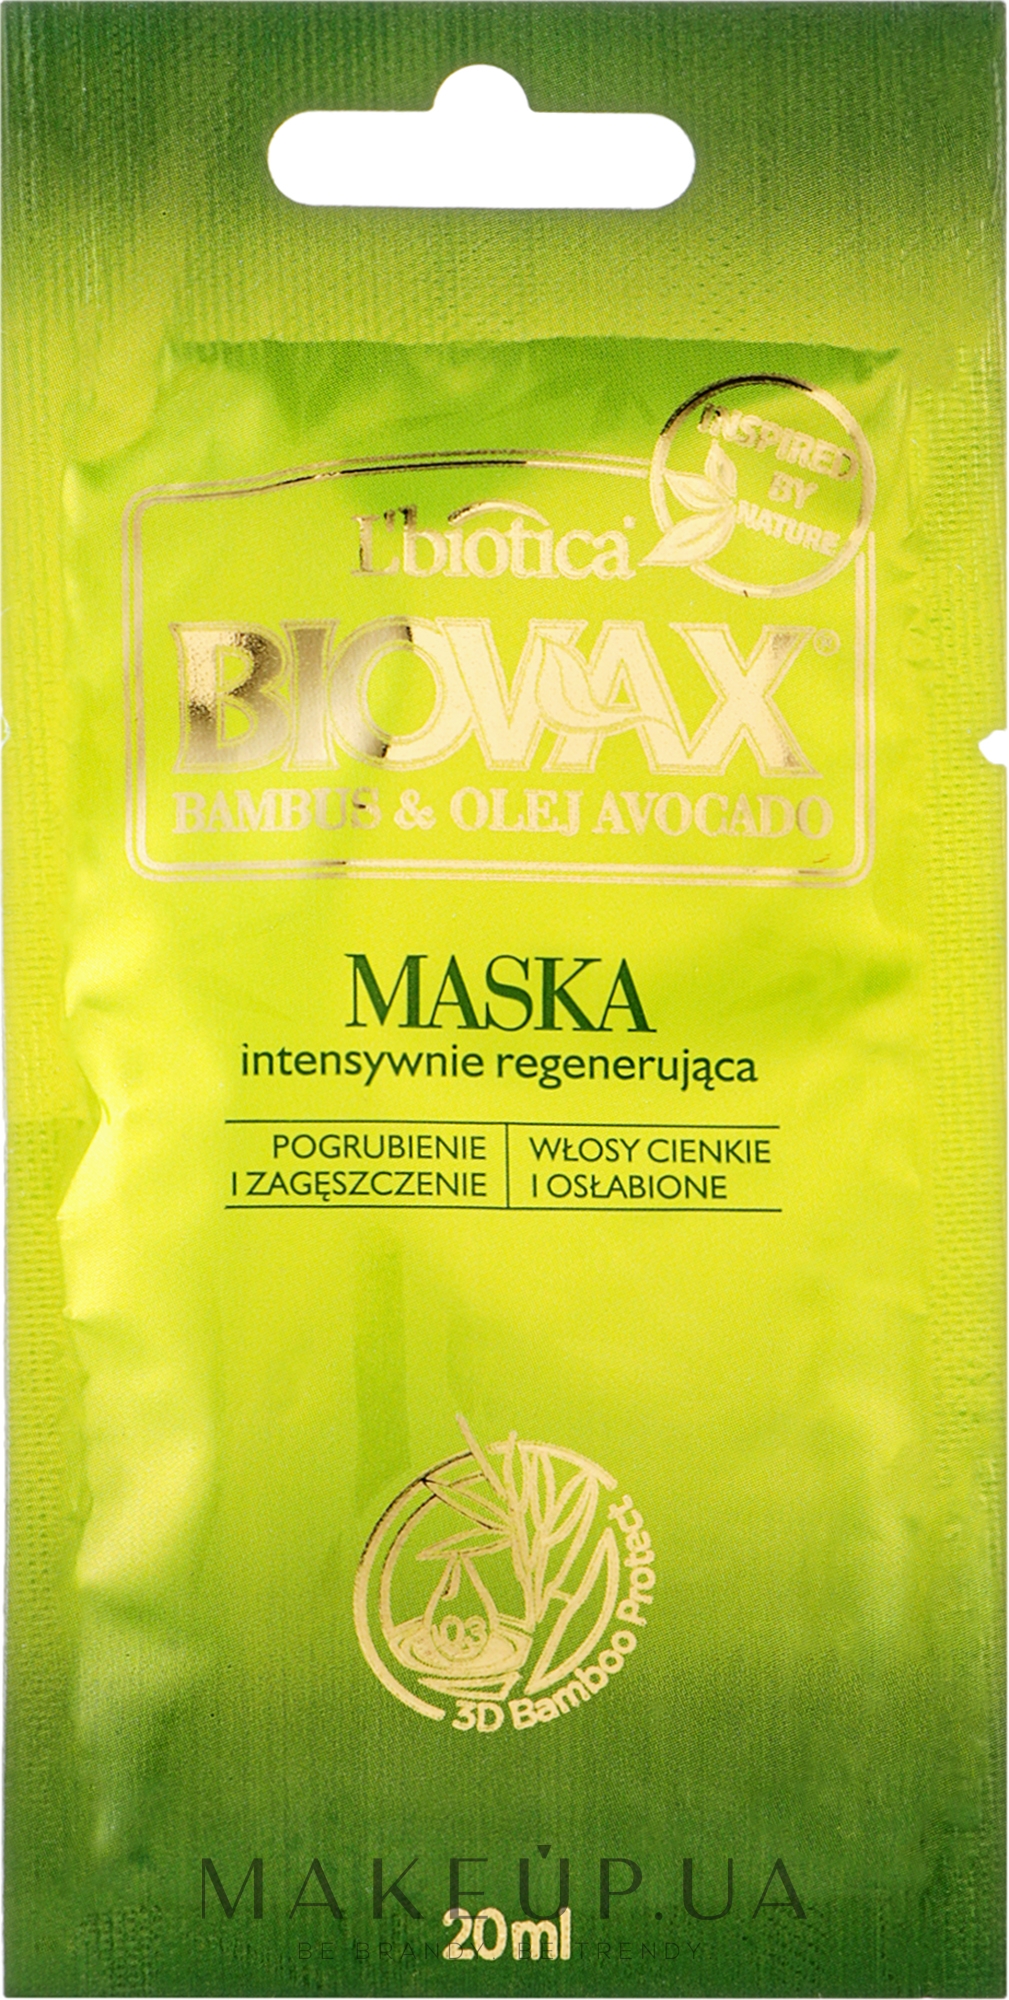 Маска для волосся "Бамбук і авокадо" - L'biotica Biovax Hair Mask (пробник) — фото 20ml